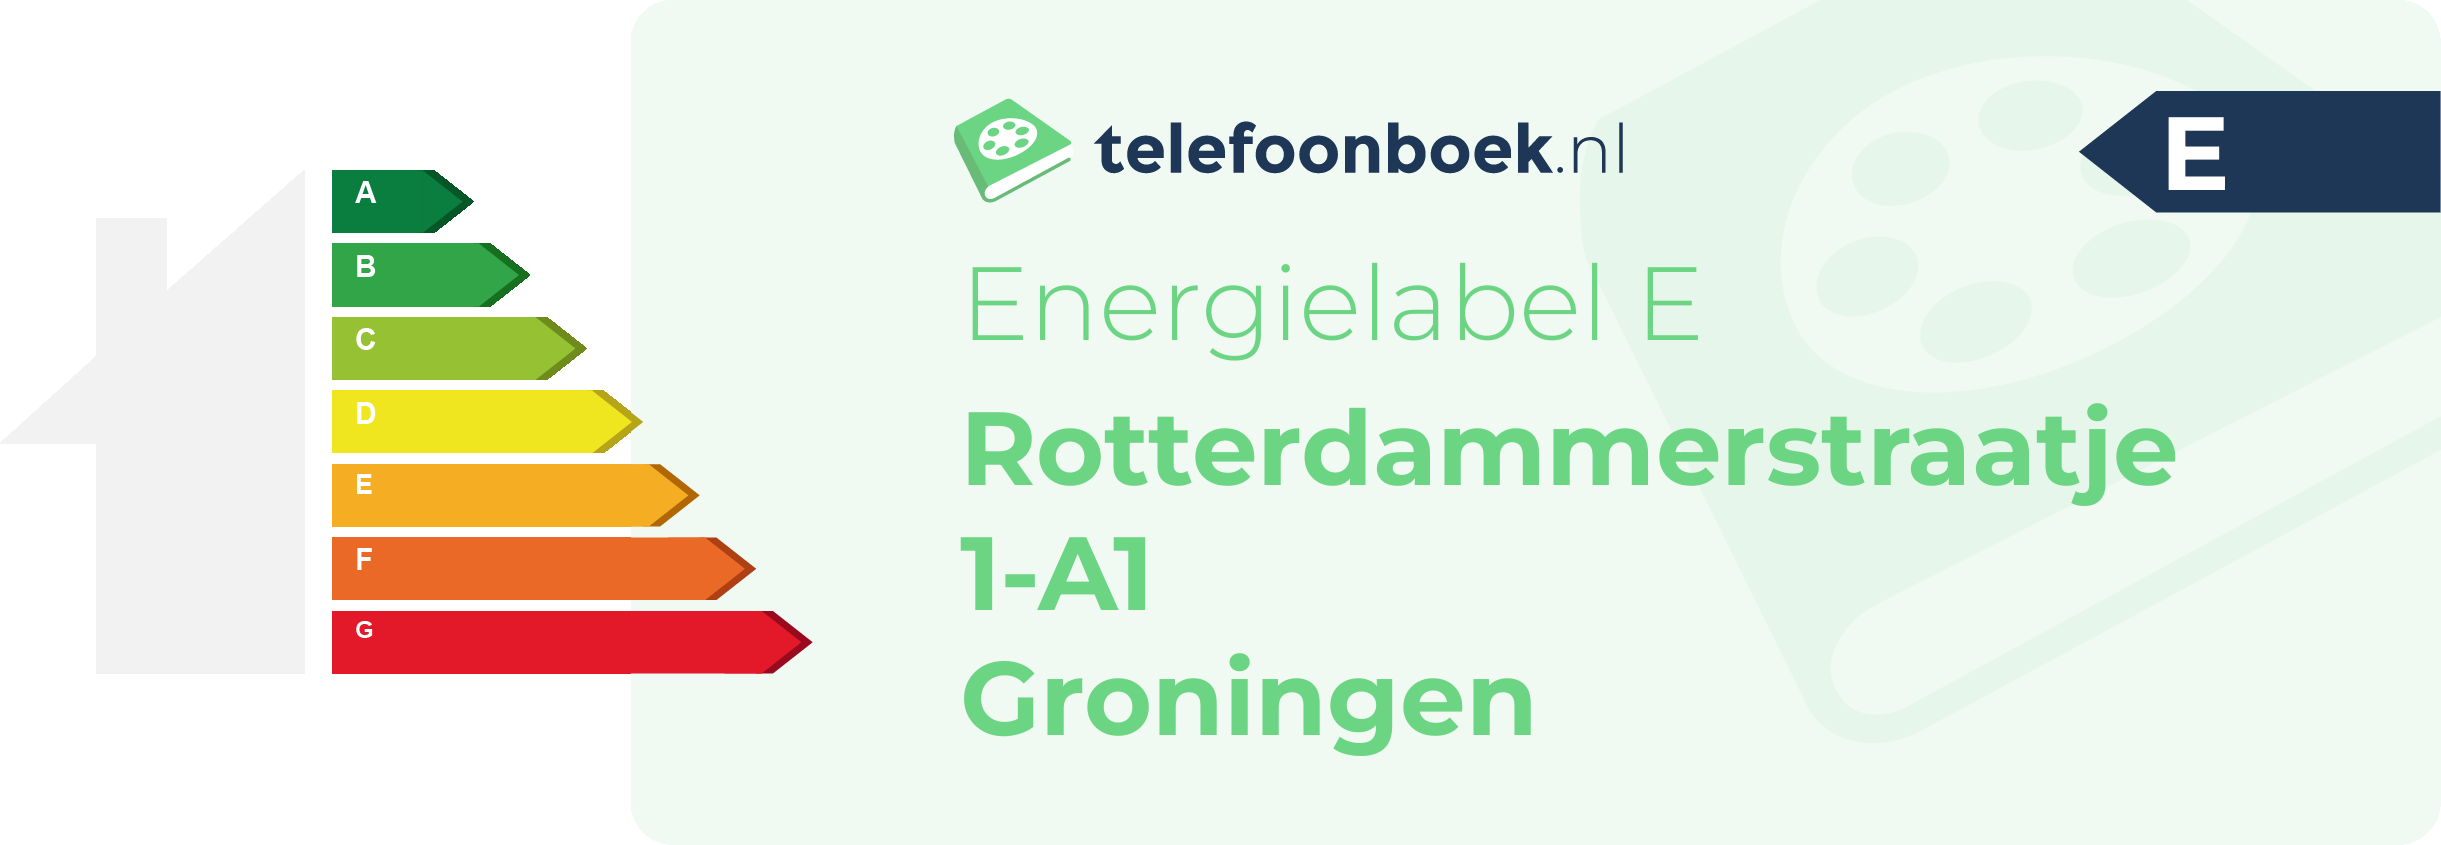 Energielabel Rotterdammerstraatje 1-A1 Groningen